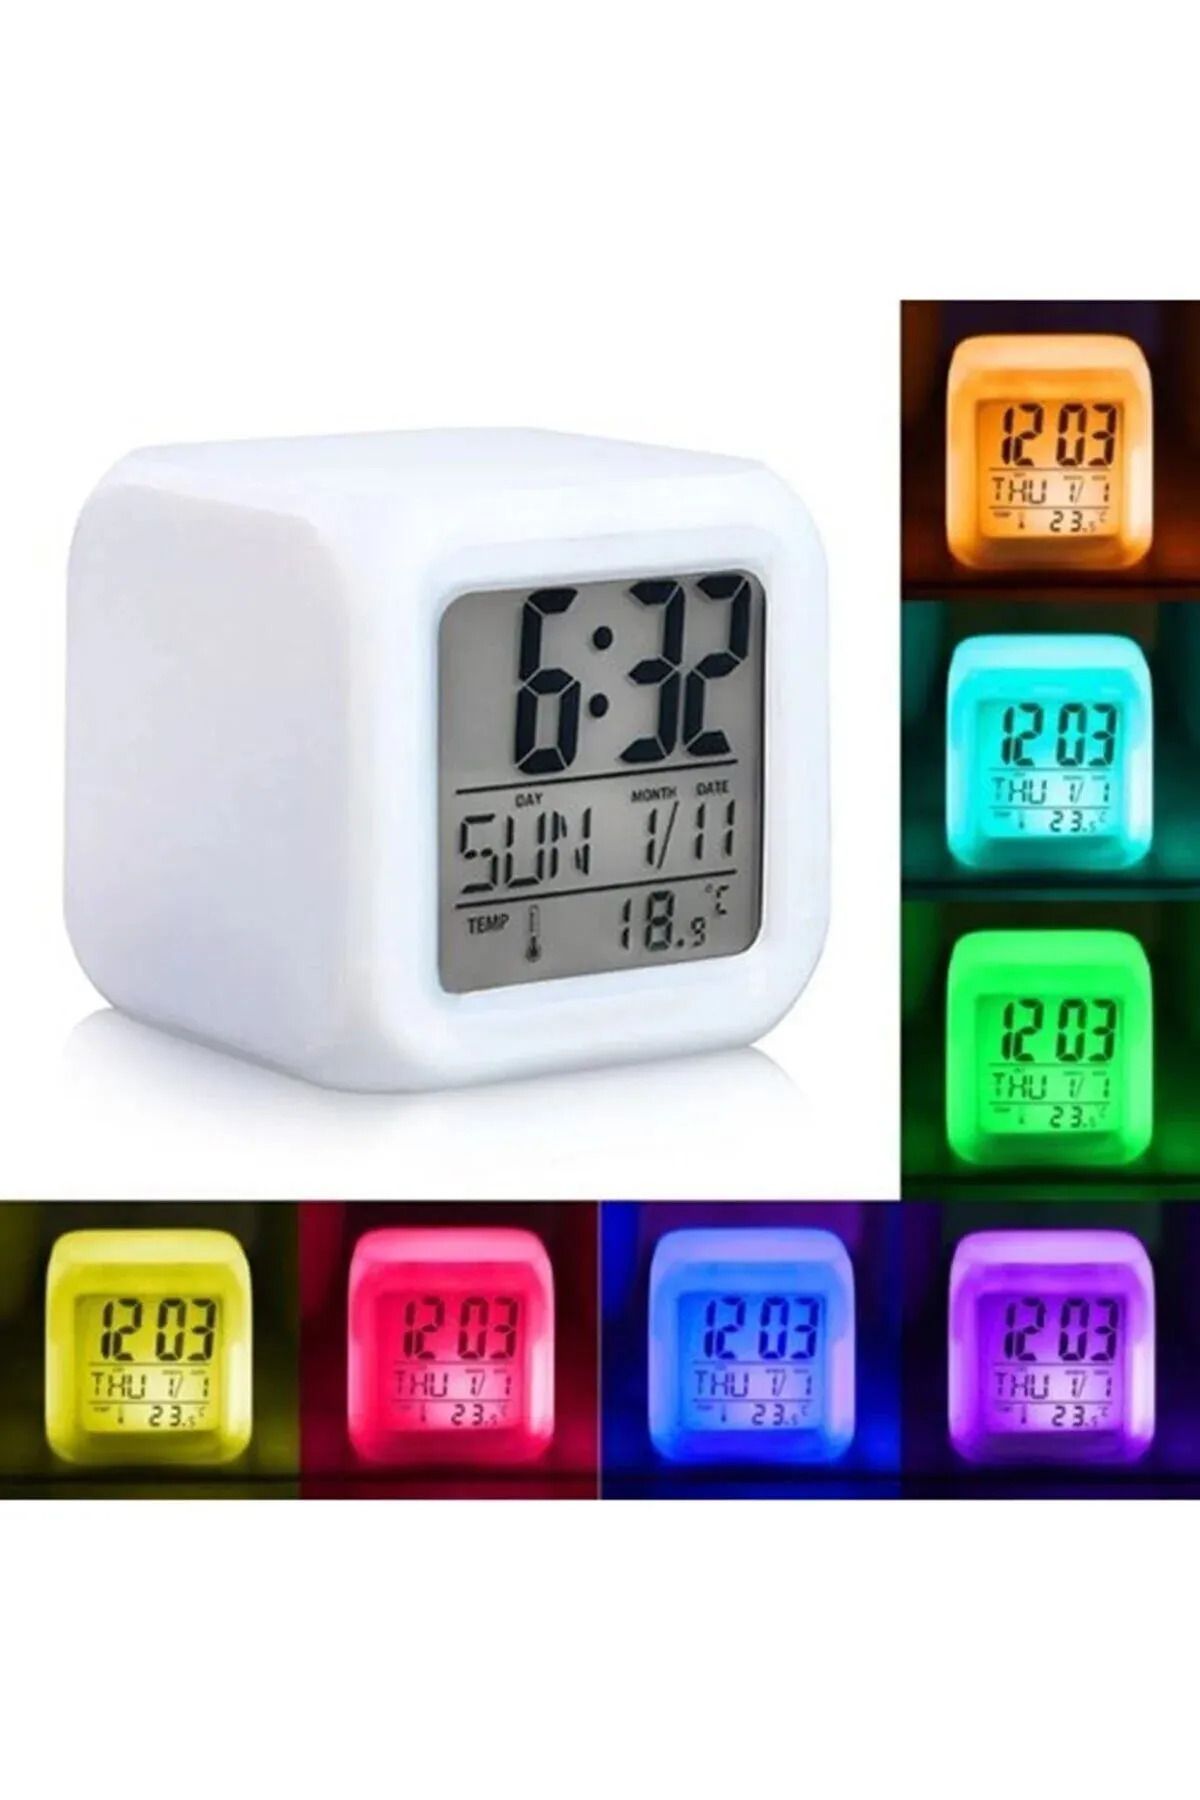 ANI OFİS KIRTASİYE Ev Ofis Masa Saati 7 Renk Değiştiren Dijital Küp Alarmlı Çalar Saat Gece Lambası Takvim Sensörlü